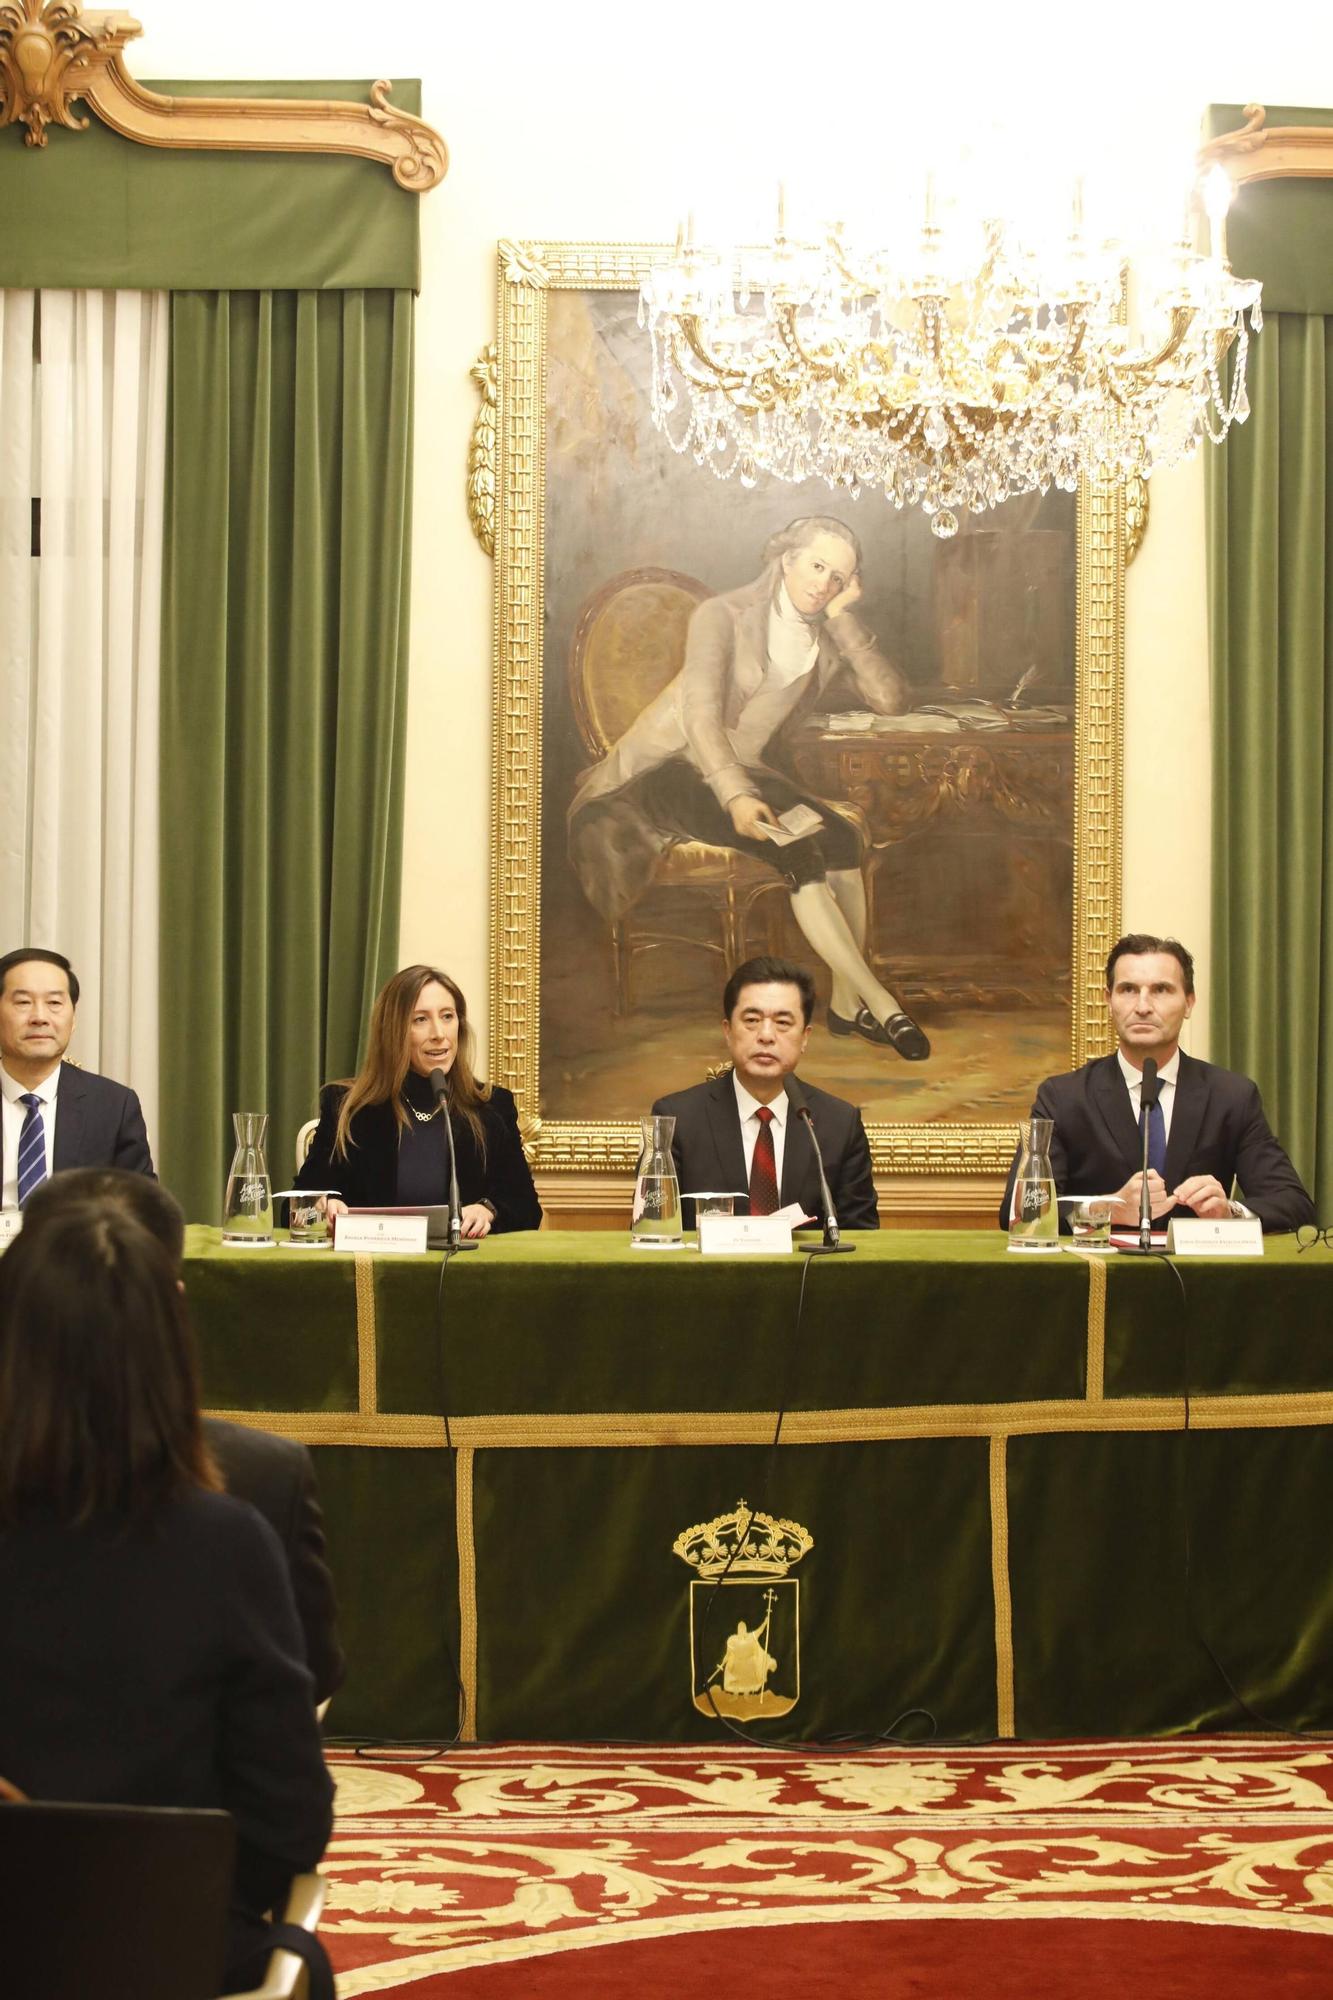 Así fue la recepción institucional a la delegación china de Yantai en Gijón (en imágenes)